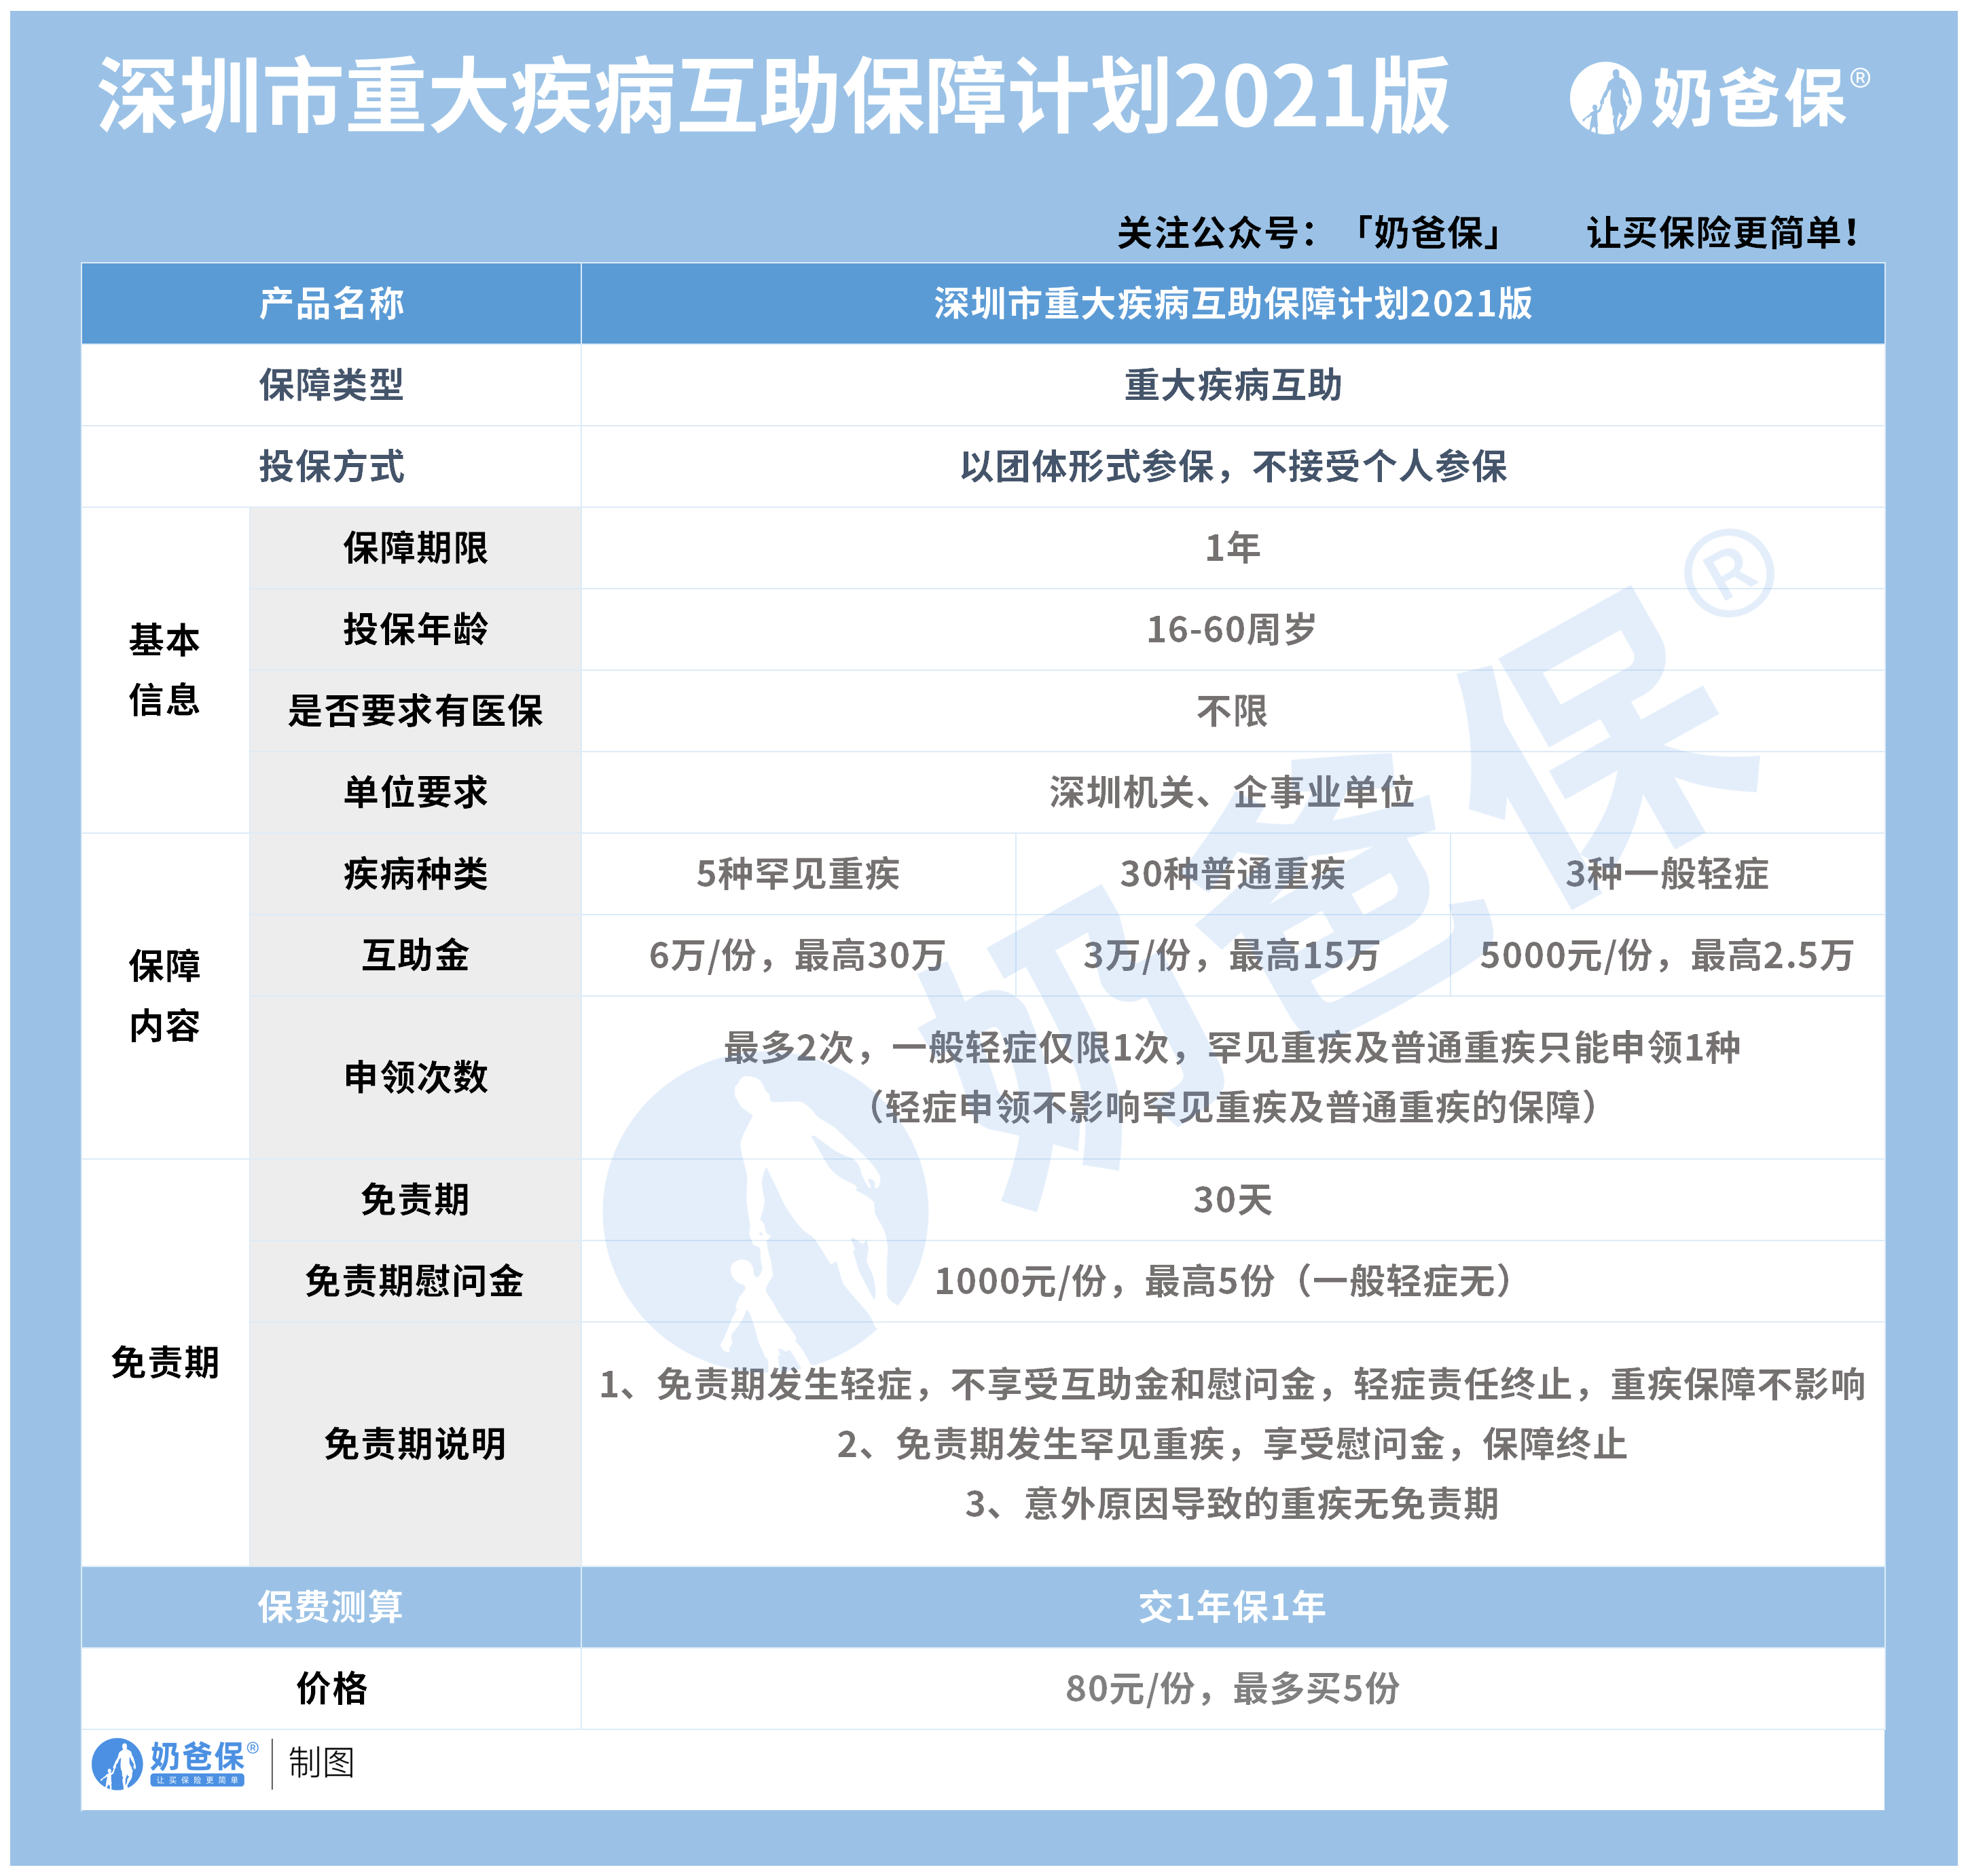 深圳市职工互助保障计划